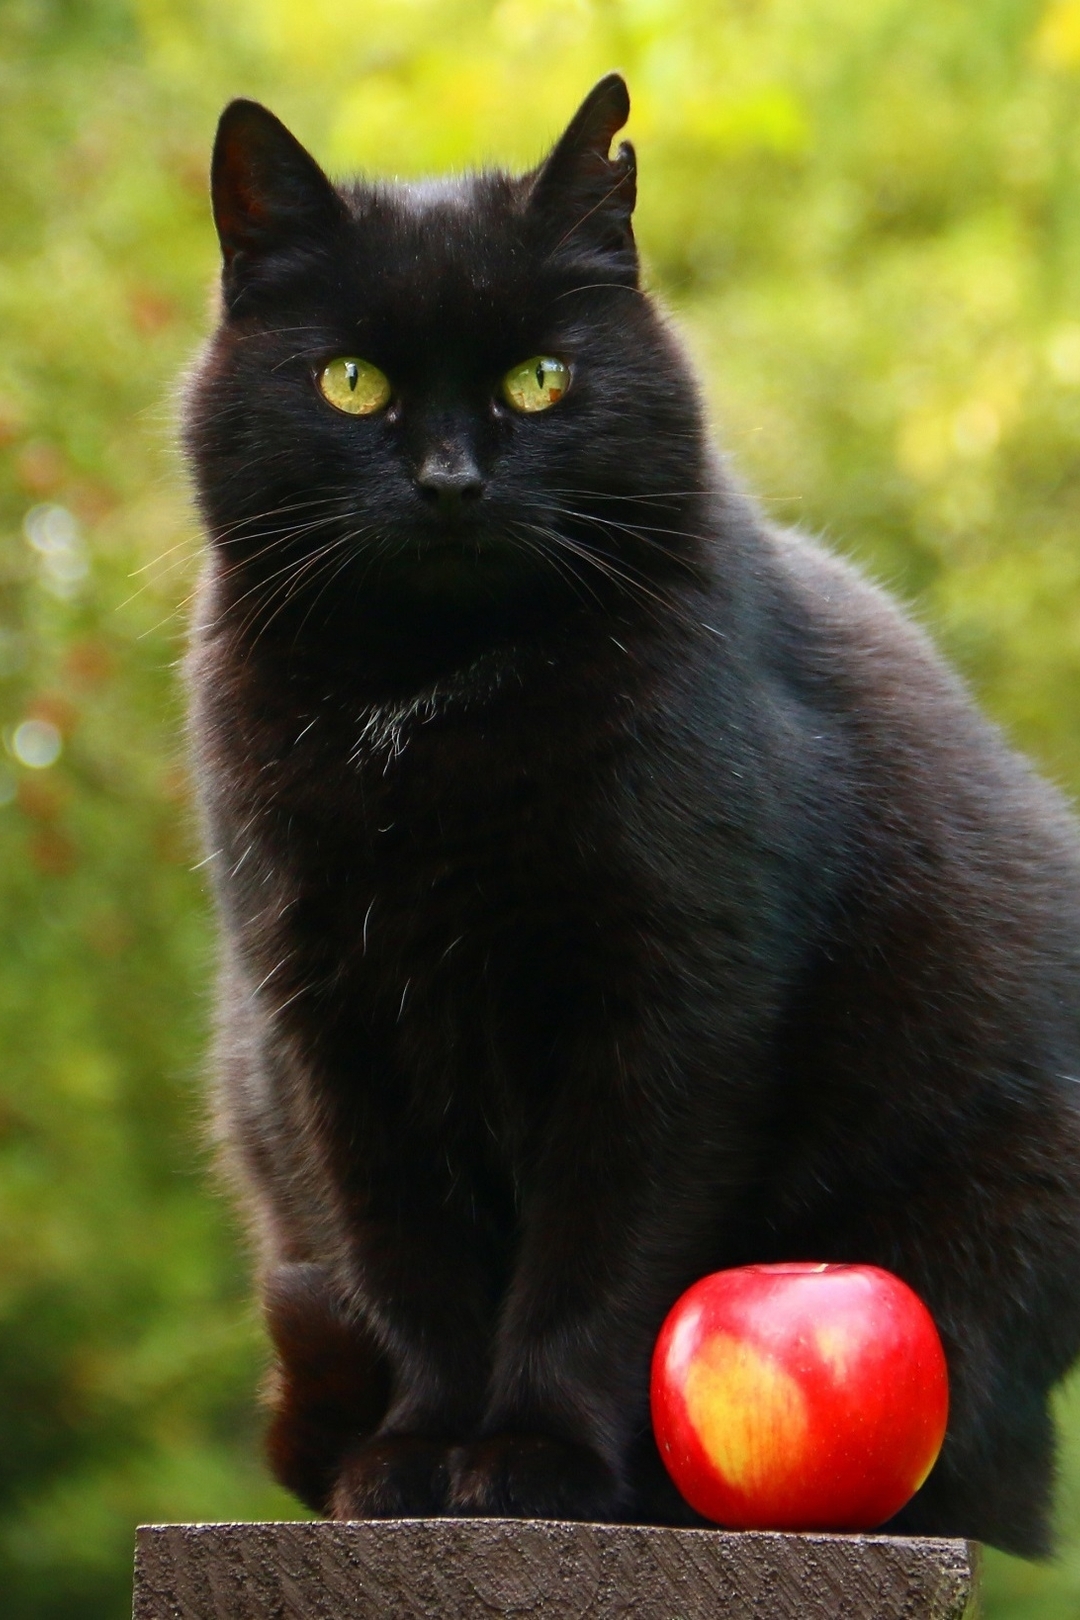 Картинка: Кот, чёрный, ухо, сидит, яблоко, красное, боке